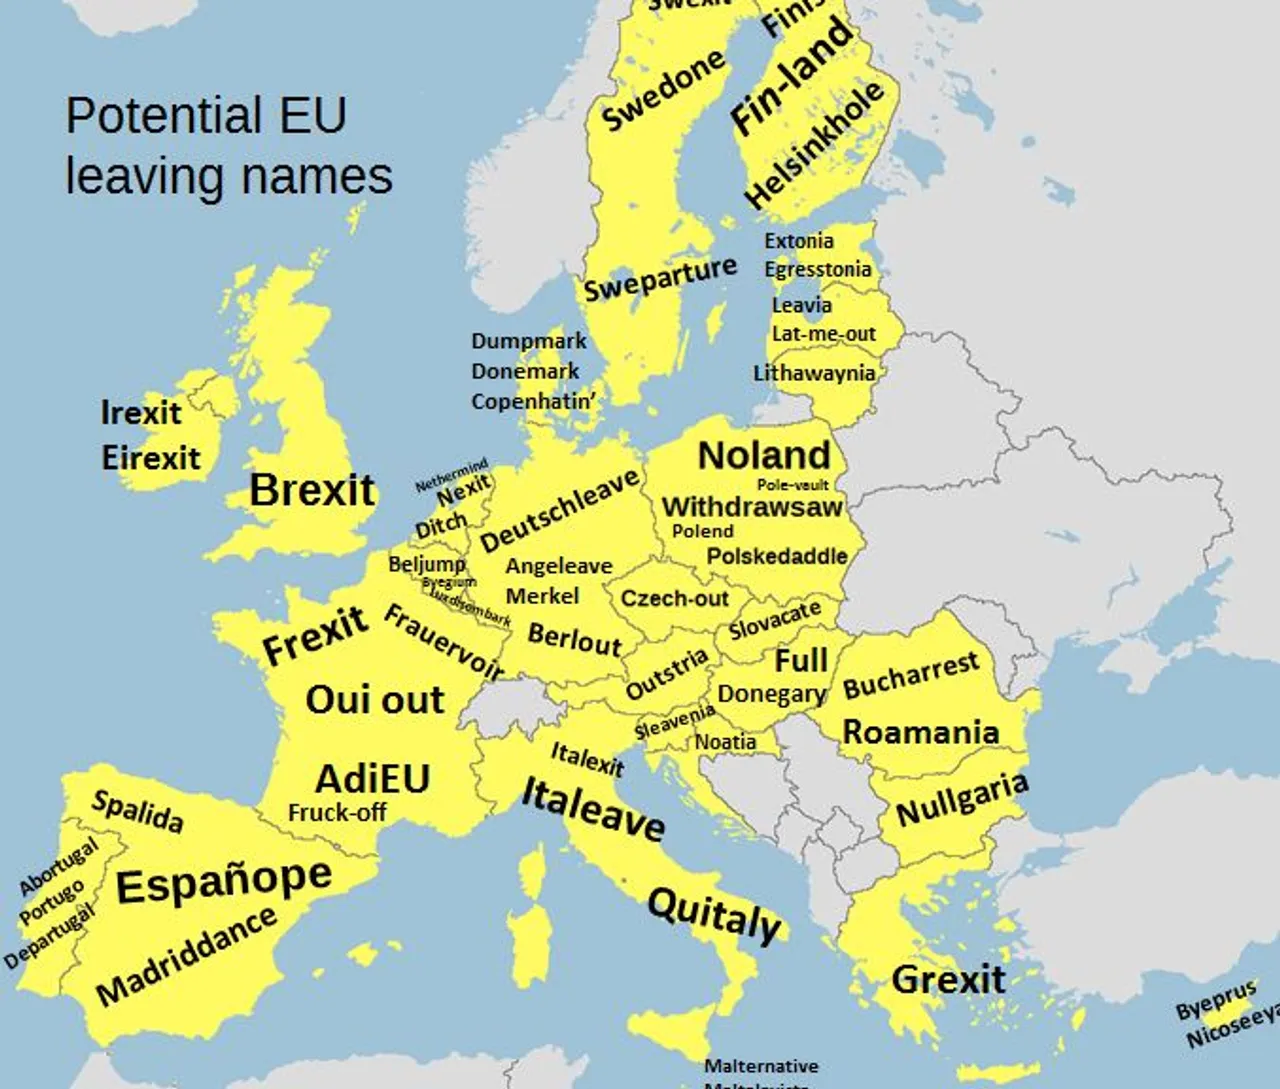 'Heavenatia' i 'Czech-out': Kako bi se zemlje EU zvale da nisu u Uniji?